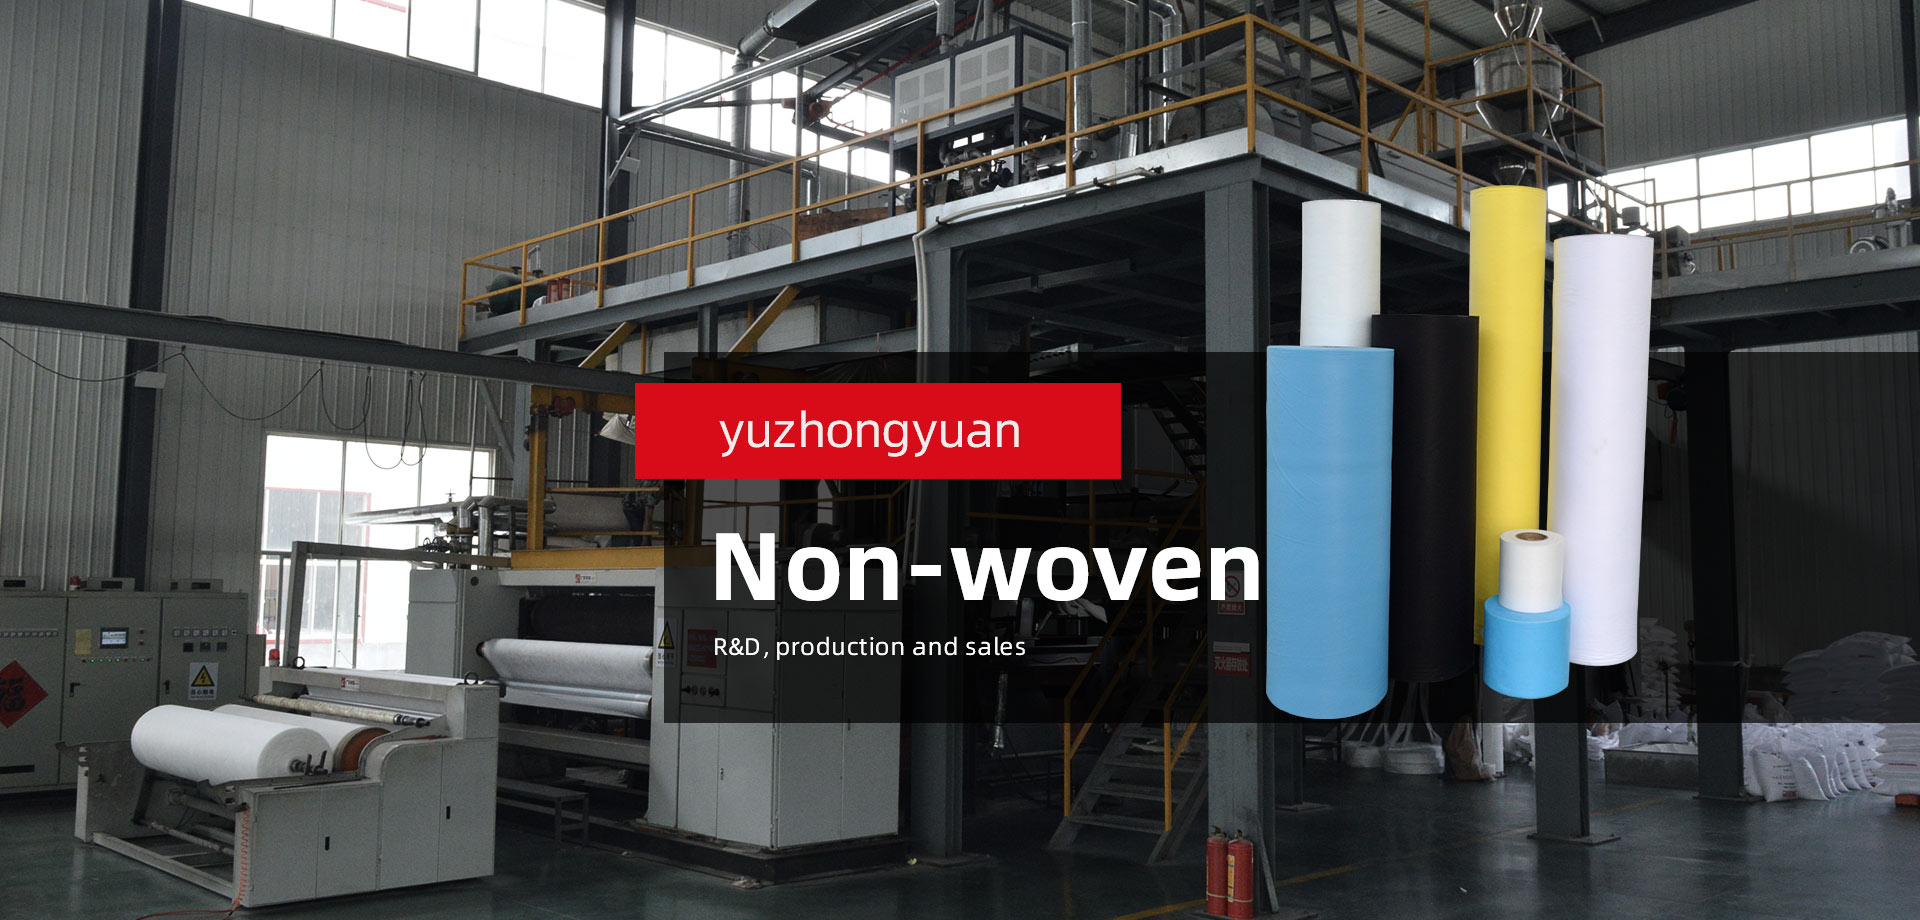 yuzhongyuan non-woven